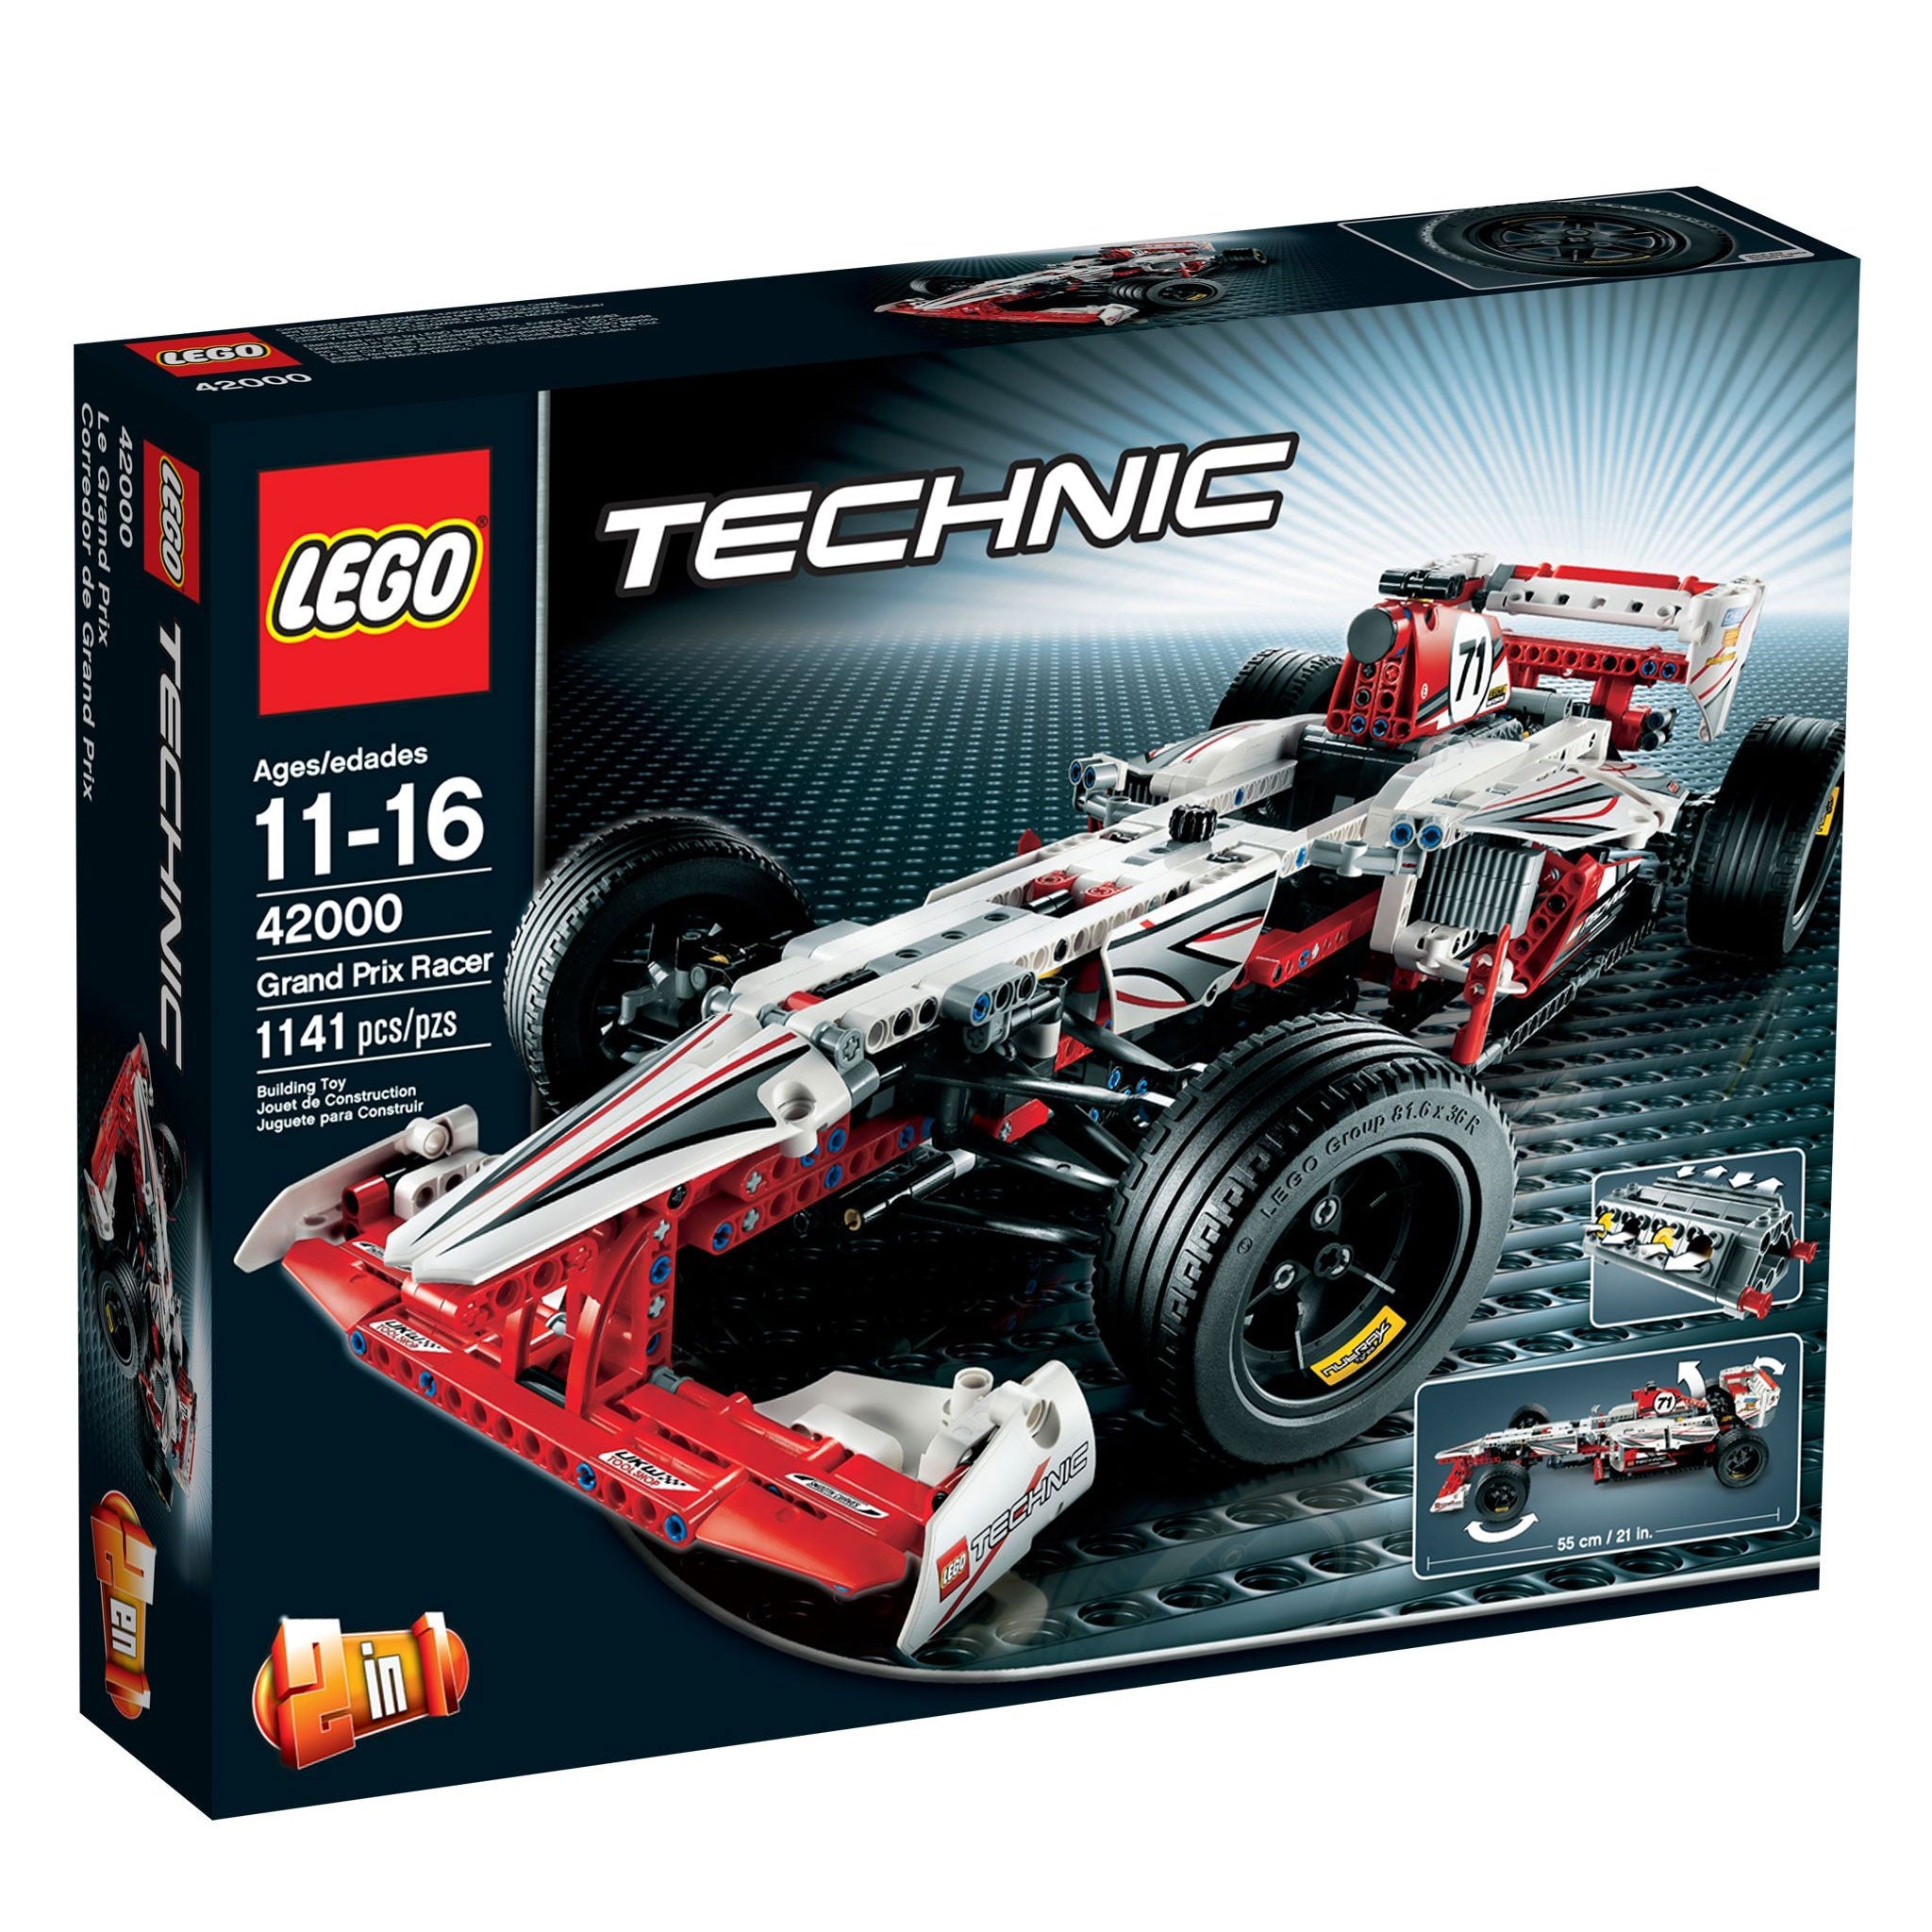 LEGO Technic Grand Prix Racer (42000) - im GOLDSTIEN.SHOP verfügbar mit Gratisversand ab Schweizer Lager! (5702014973008)